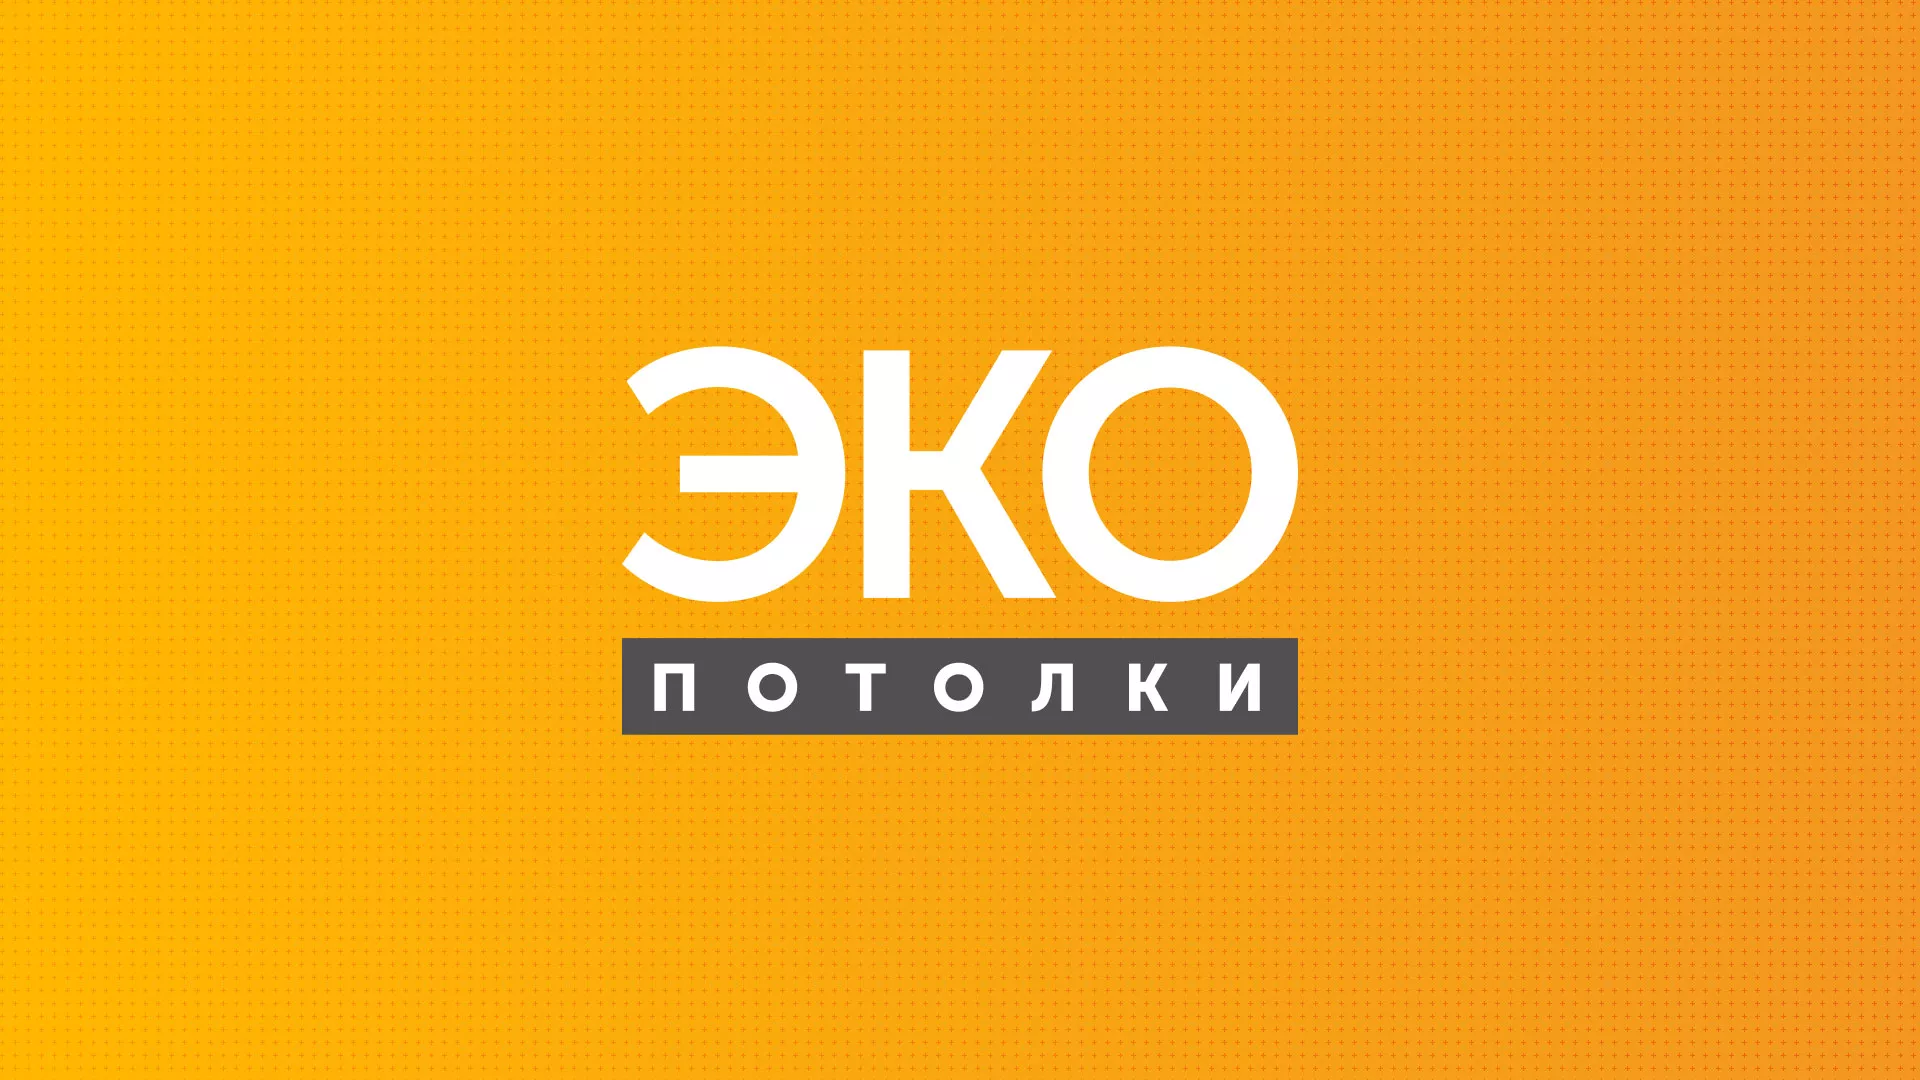 Разработка сайта по натяжным потолкам «Эко Потолки» в Михайловке